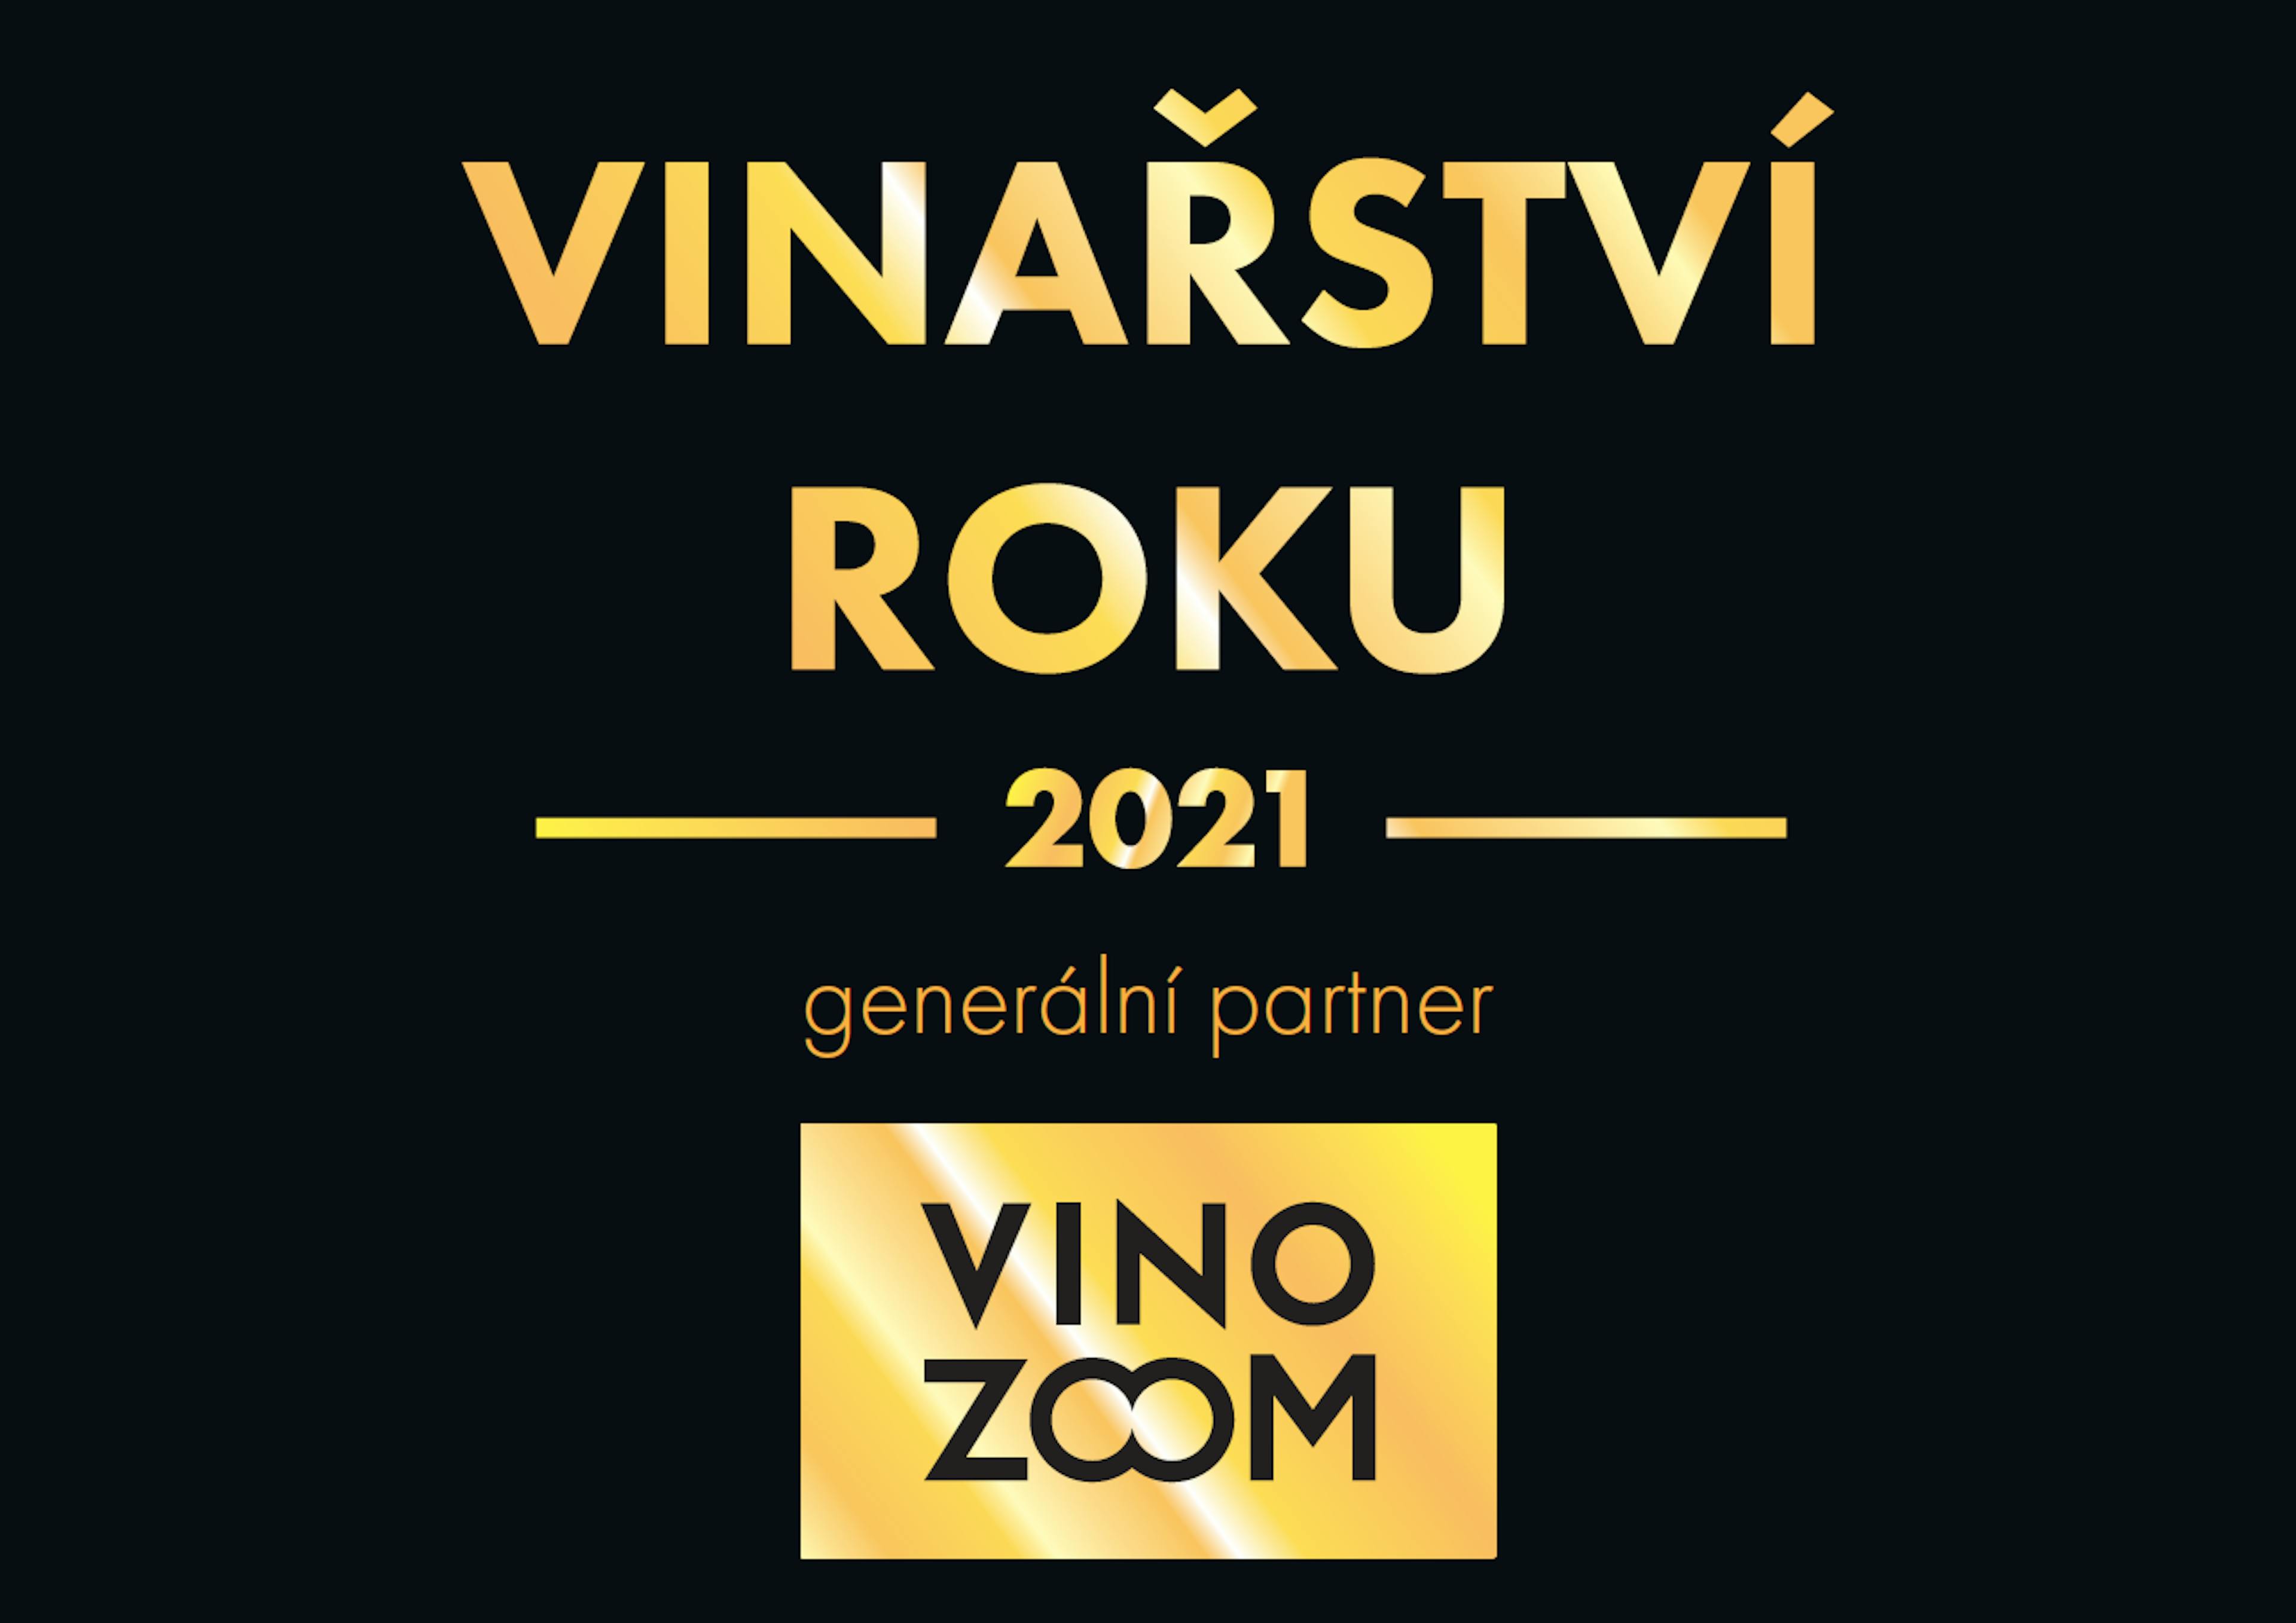 Vinařství roku 2021 logo